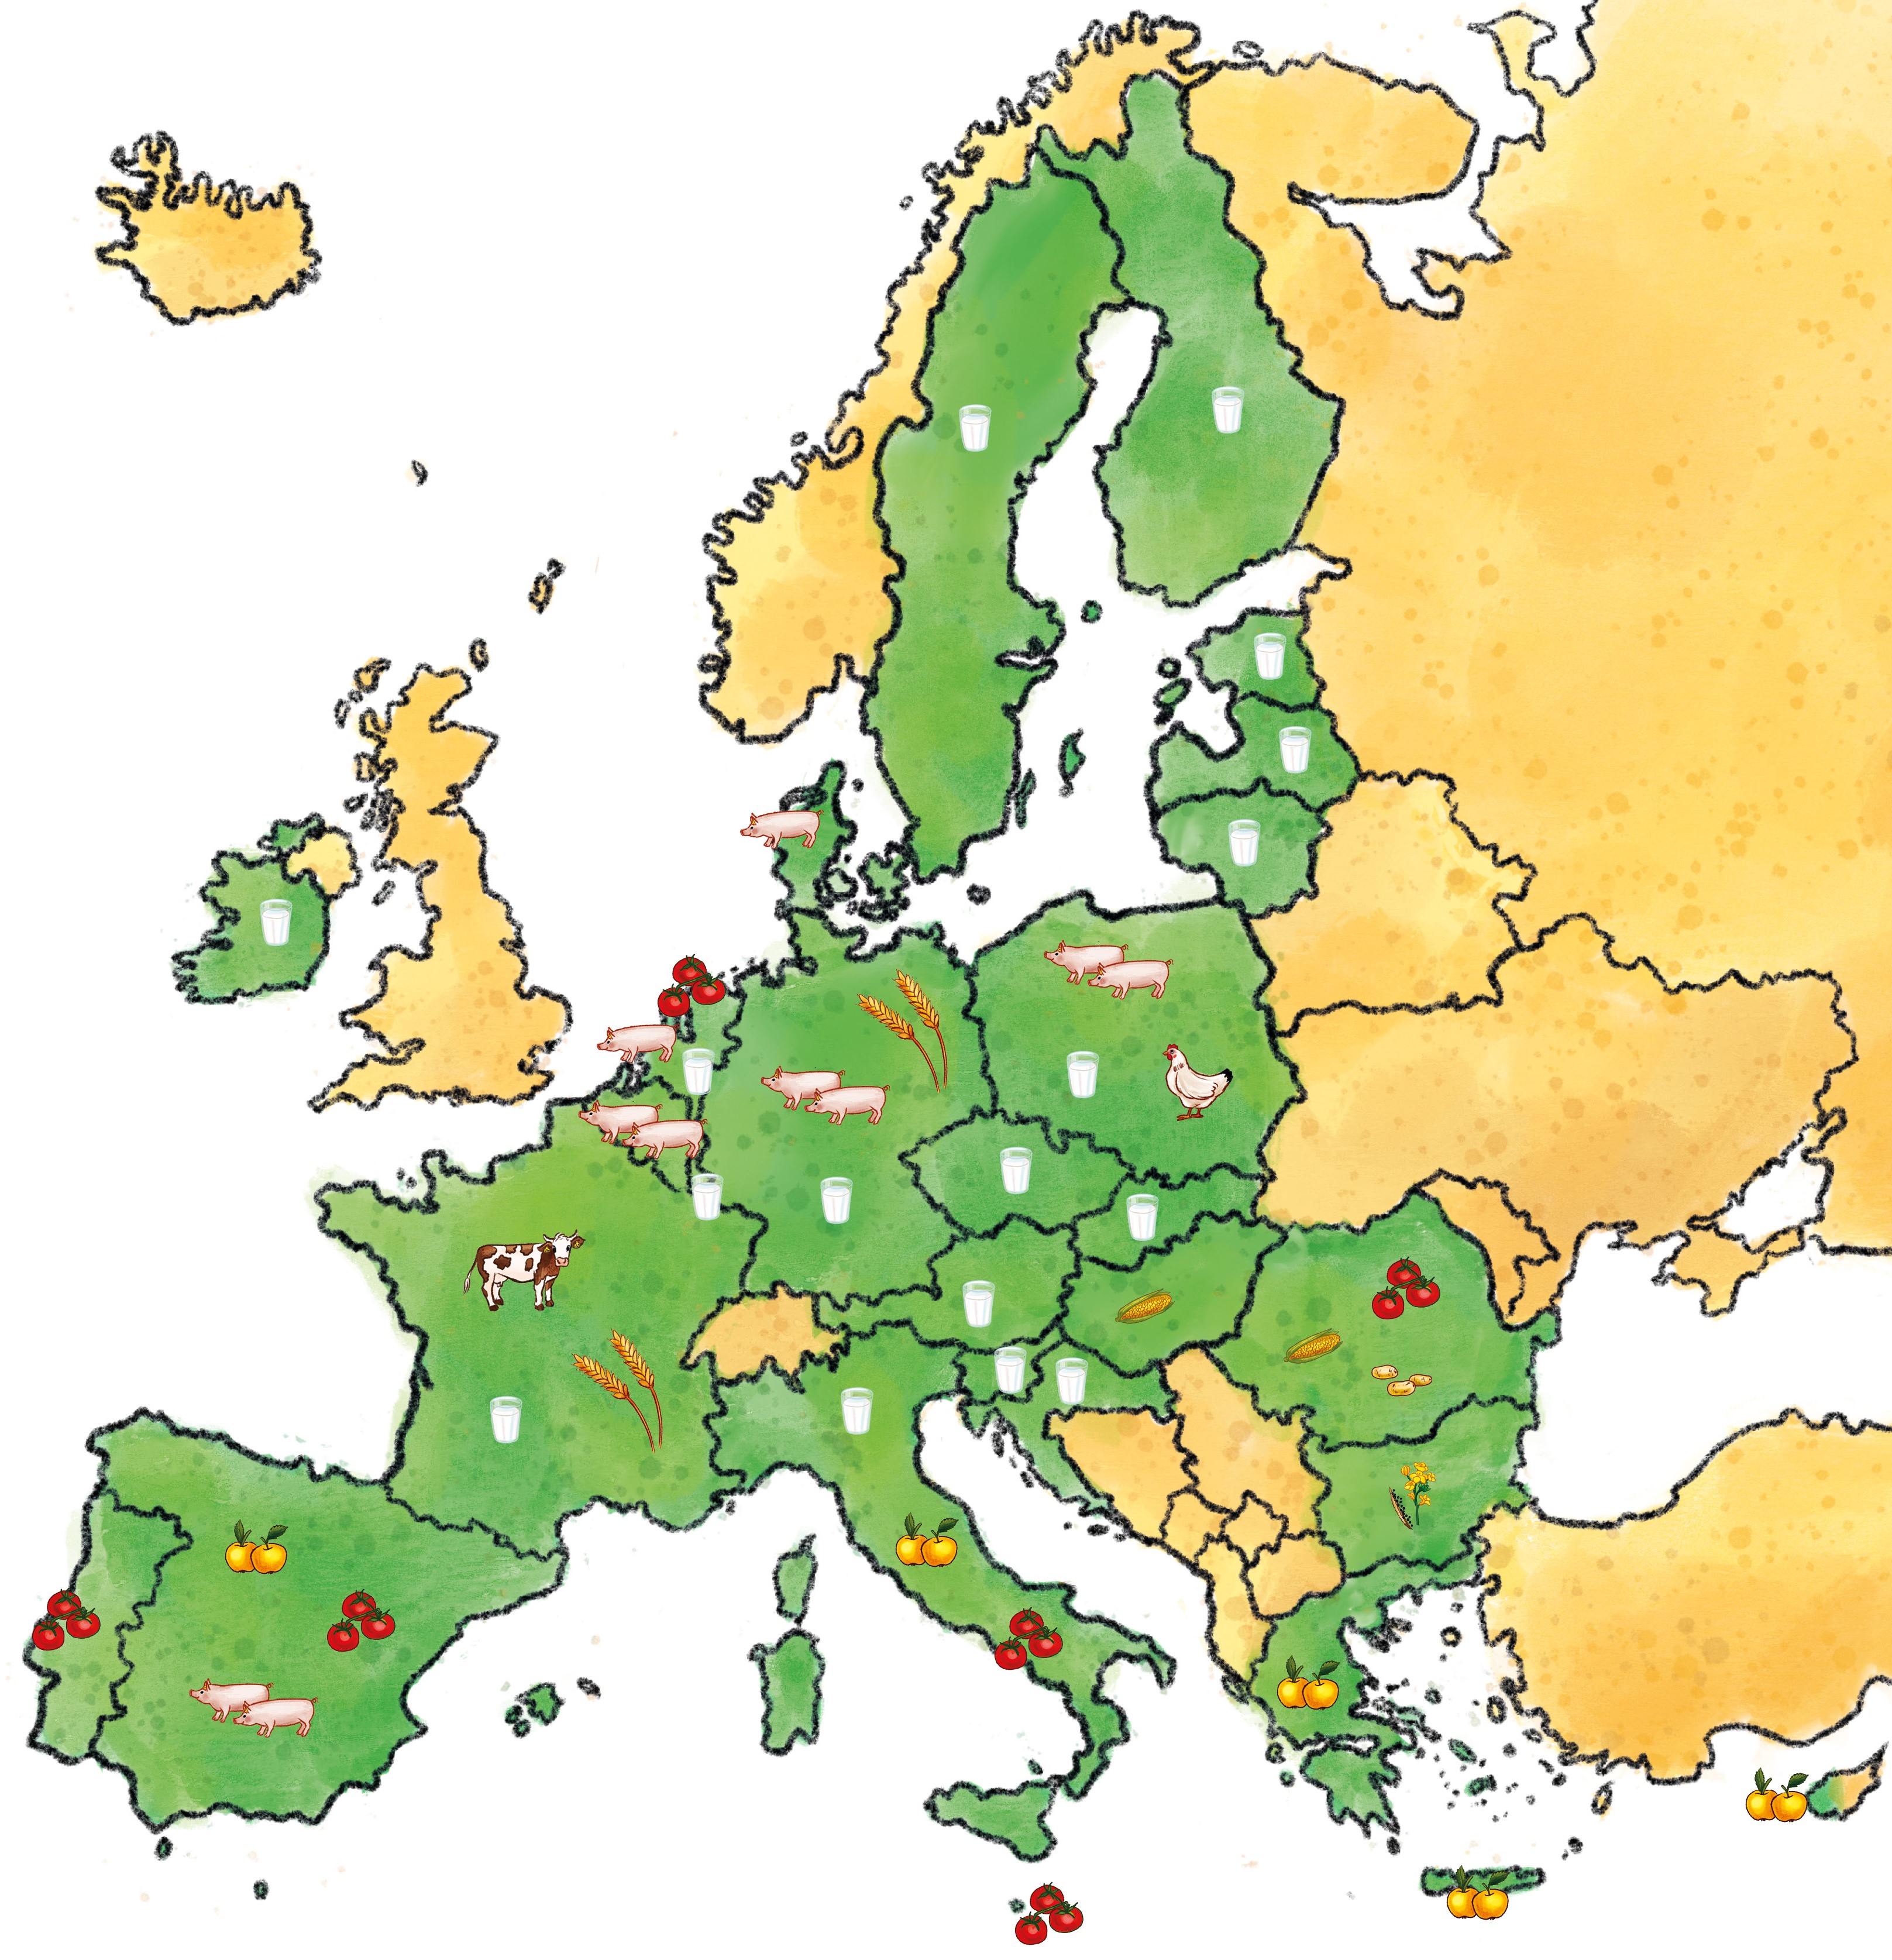 Karte von Europa, die Länder, die zur Europäischen Union gehören, sind grün eingefärbt